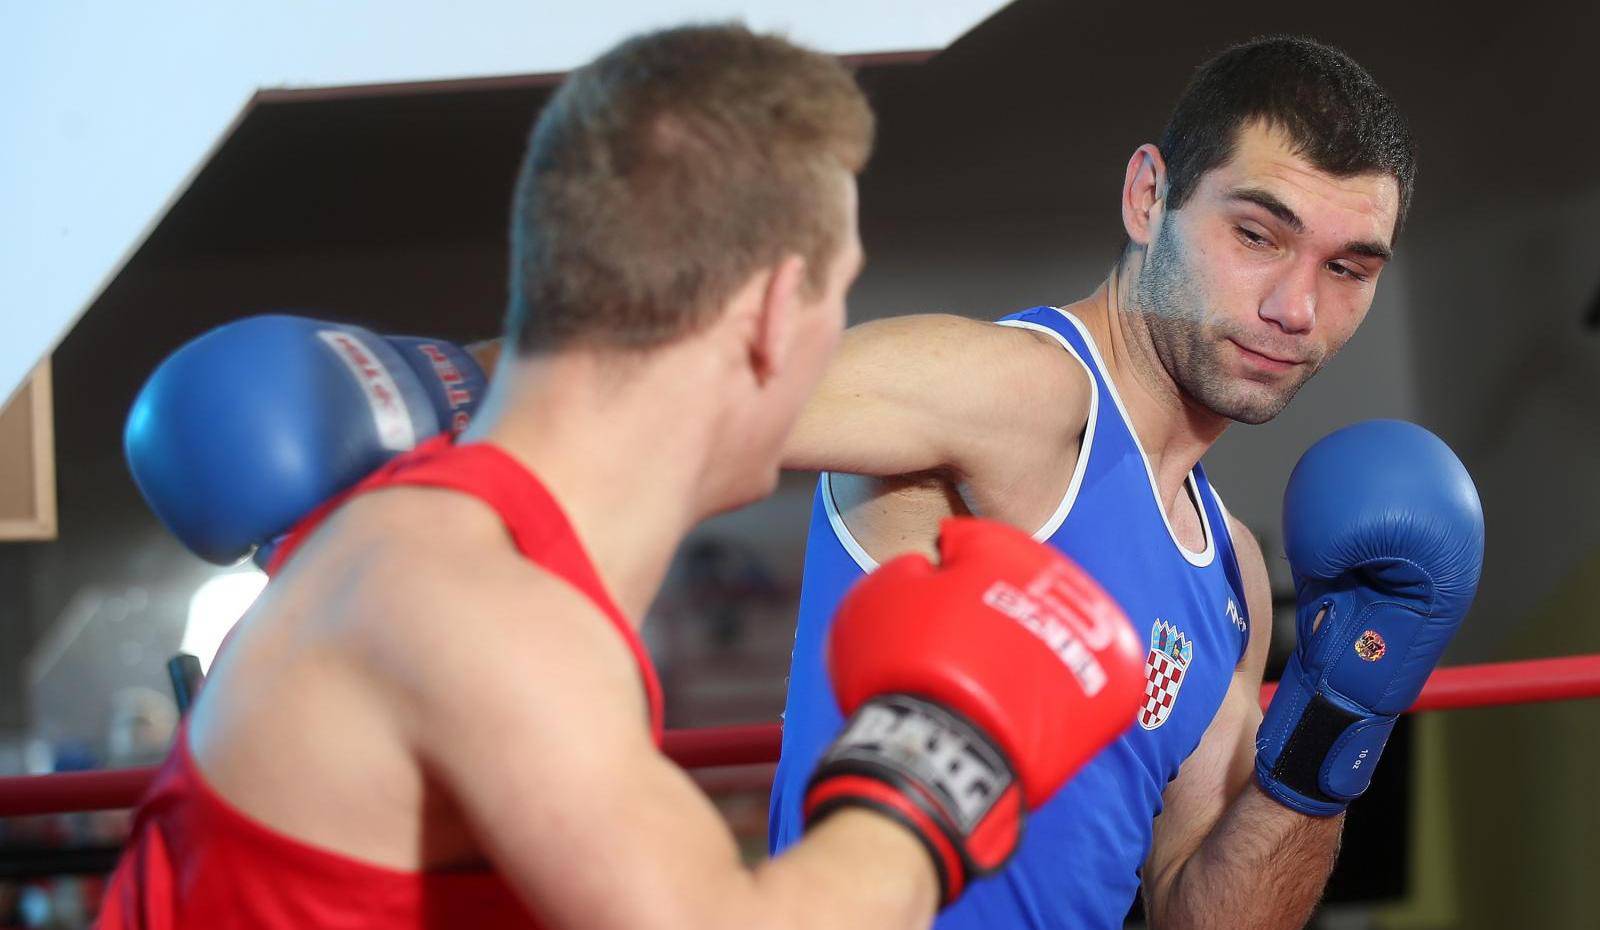 Šok u Minsku: Hrvatski boksač bio je pozitivan na doping testu